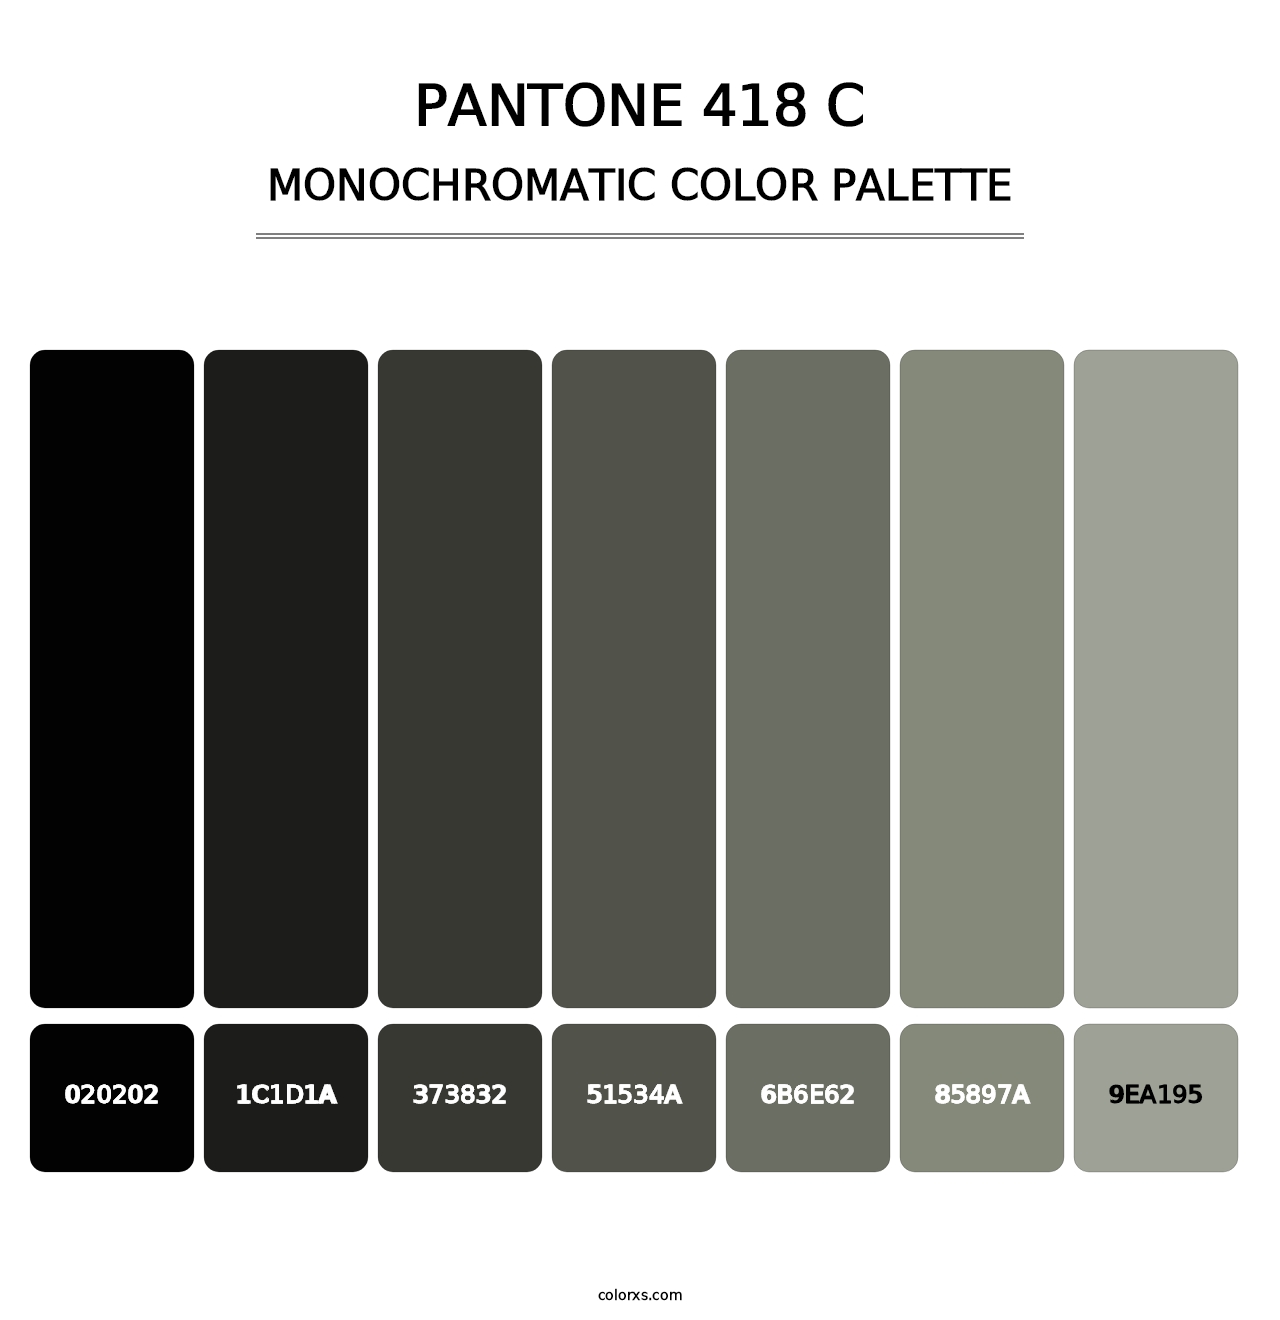 PANTONE 418 C - Monochromatic Color Palette